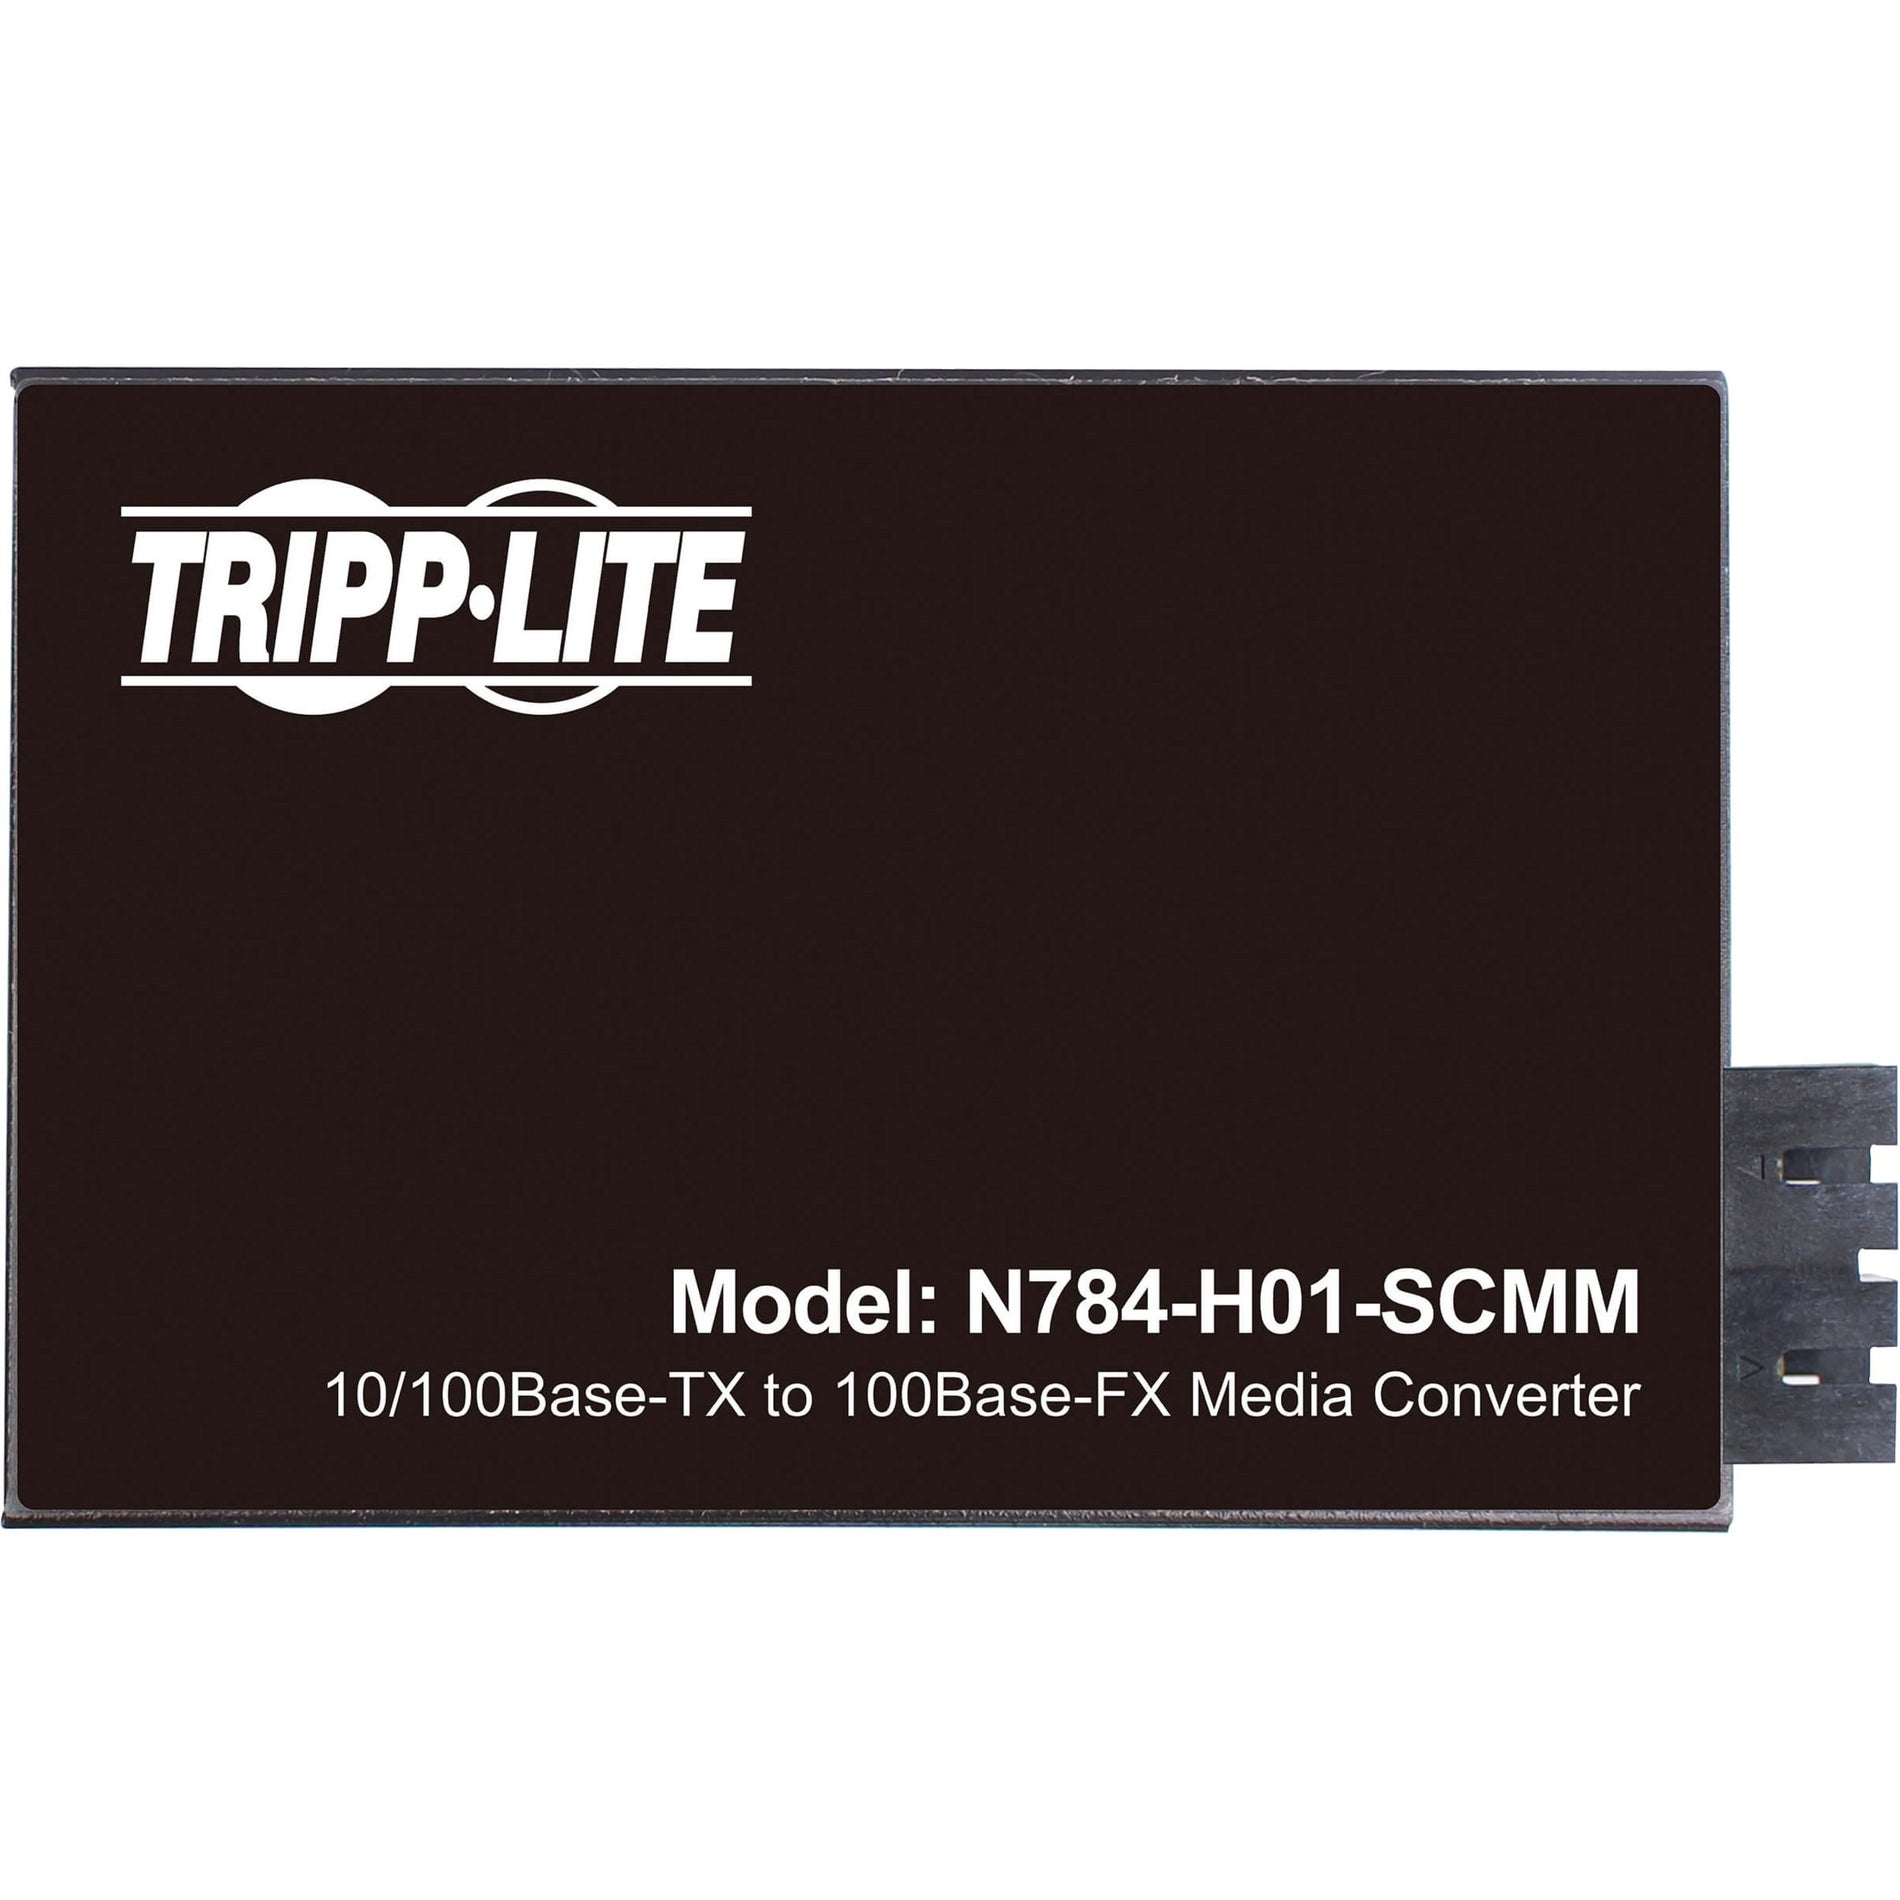 Tripp Lite N784-H01-SCMM Transceiver/Media Converter, Hardened Copper to Fiber, 2 Year Warranty, TAA Compliant